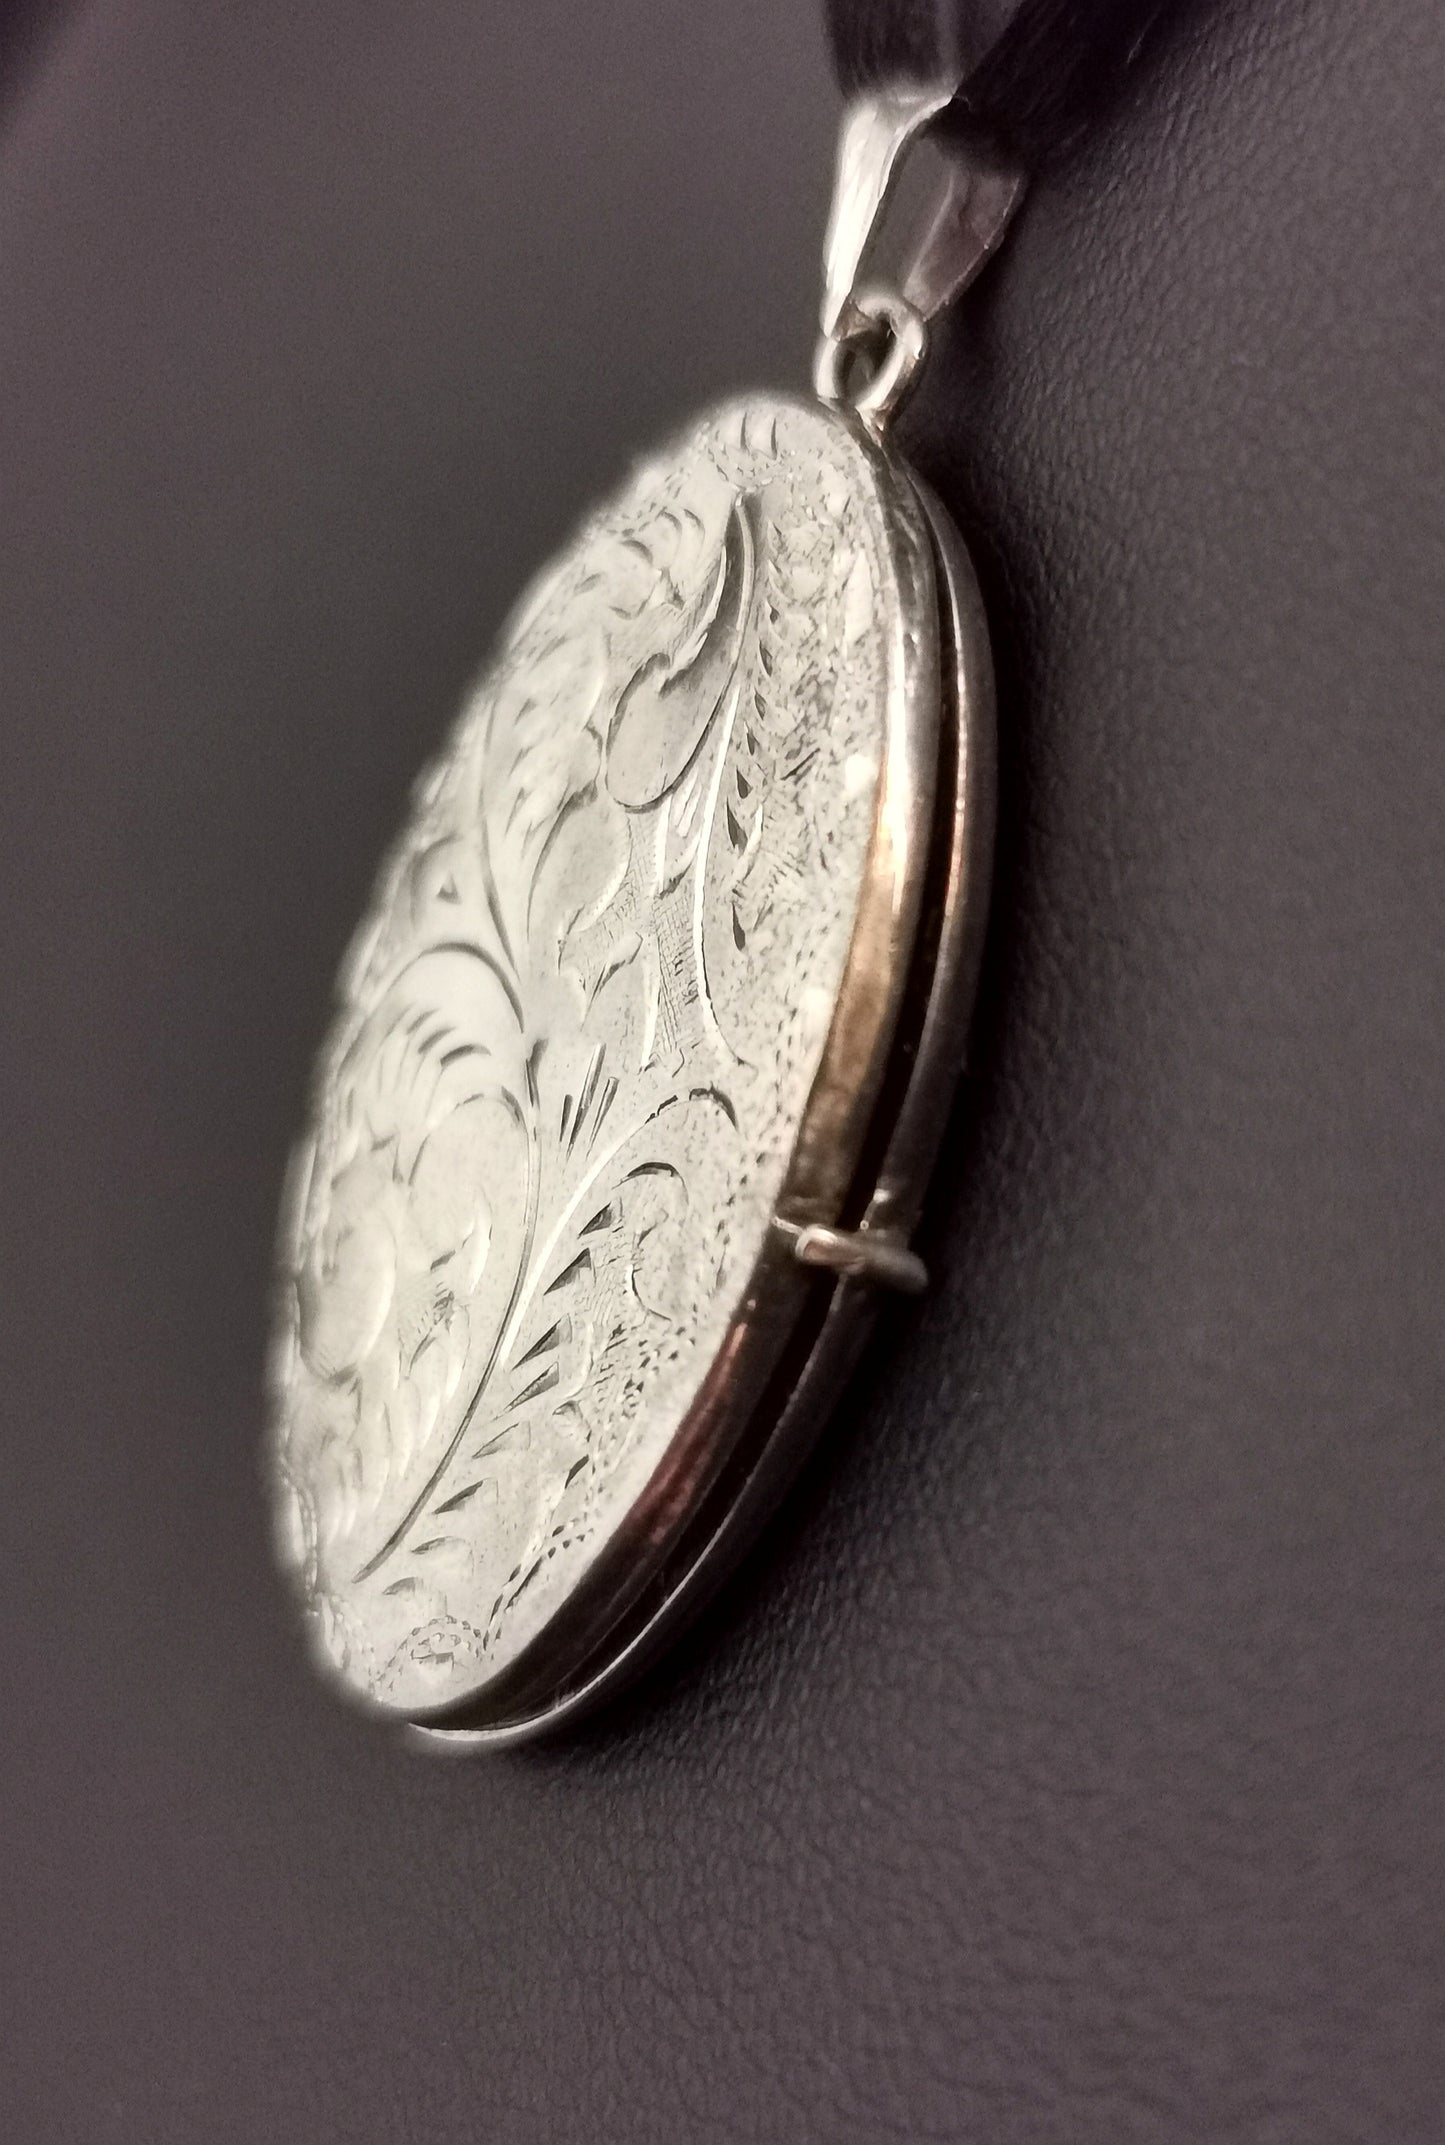 Vintage sterling silver locket pendant, engraved